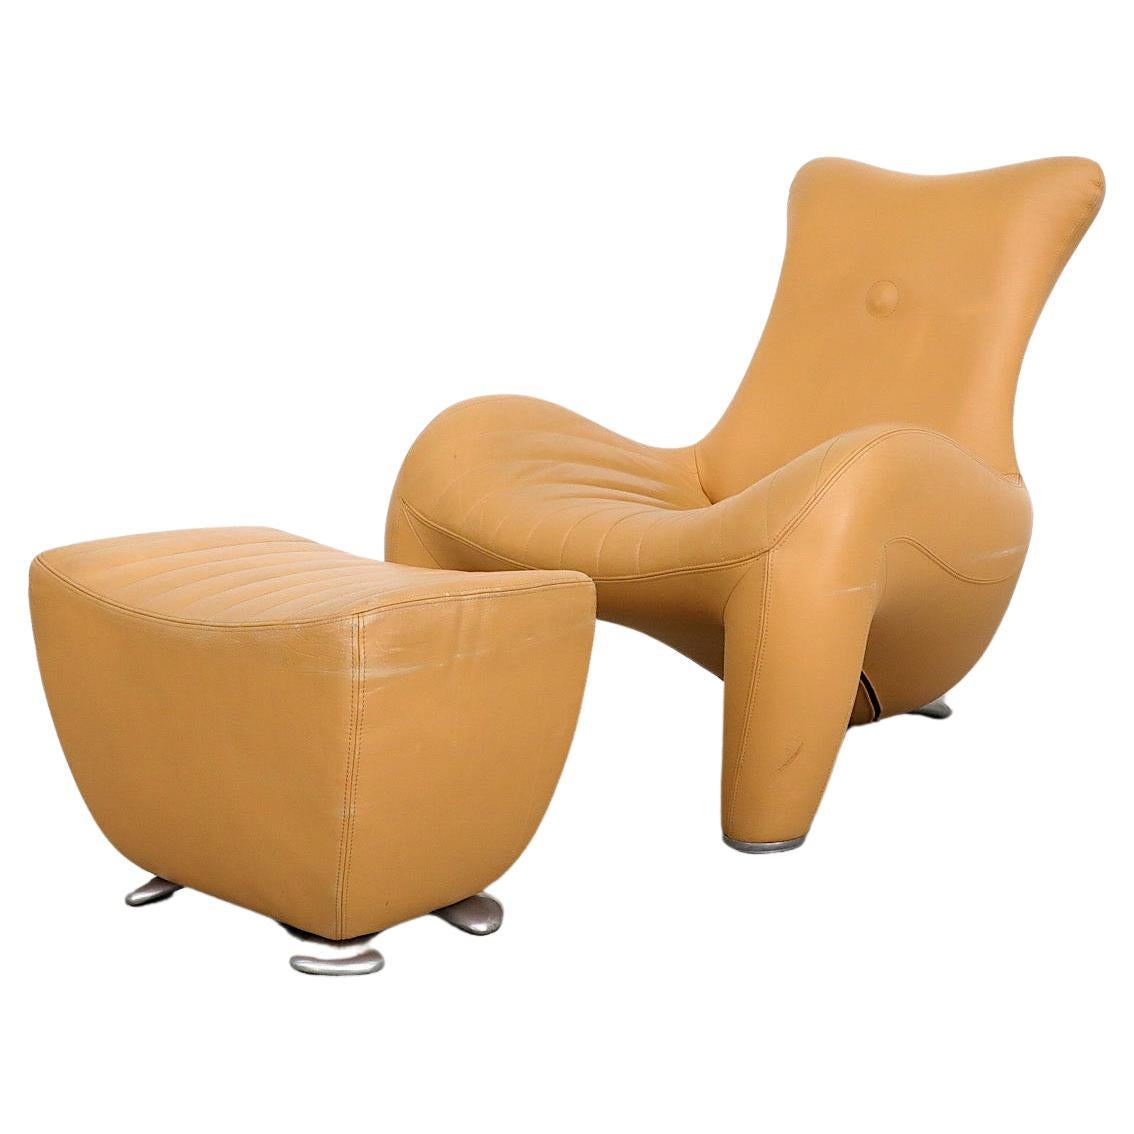 Leolux Sand Leather Balou Lounge Chair with Ottoman (Chaise longue en cuir sable avec pouf)